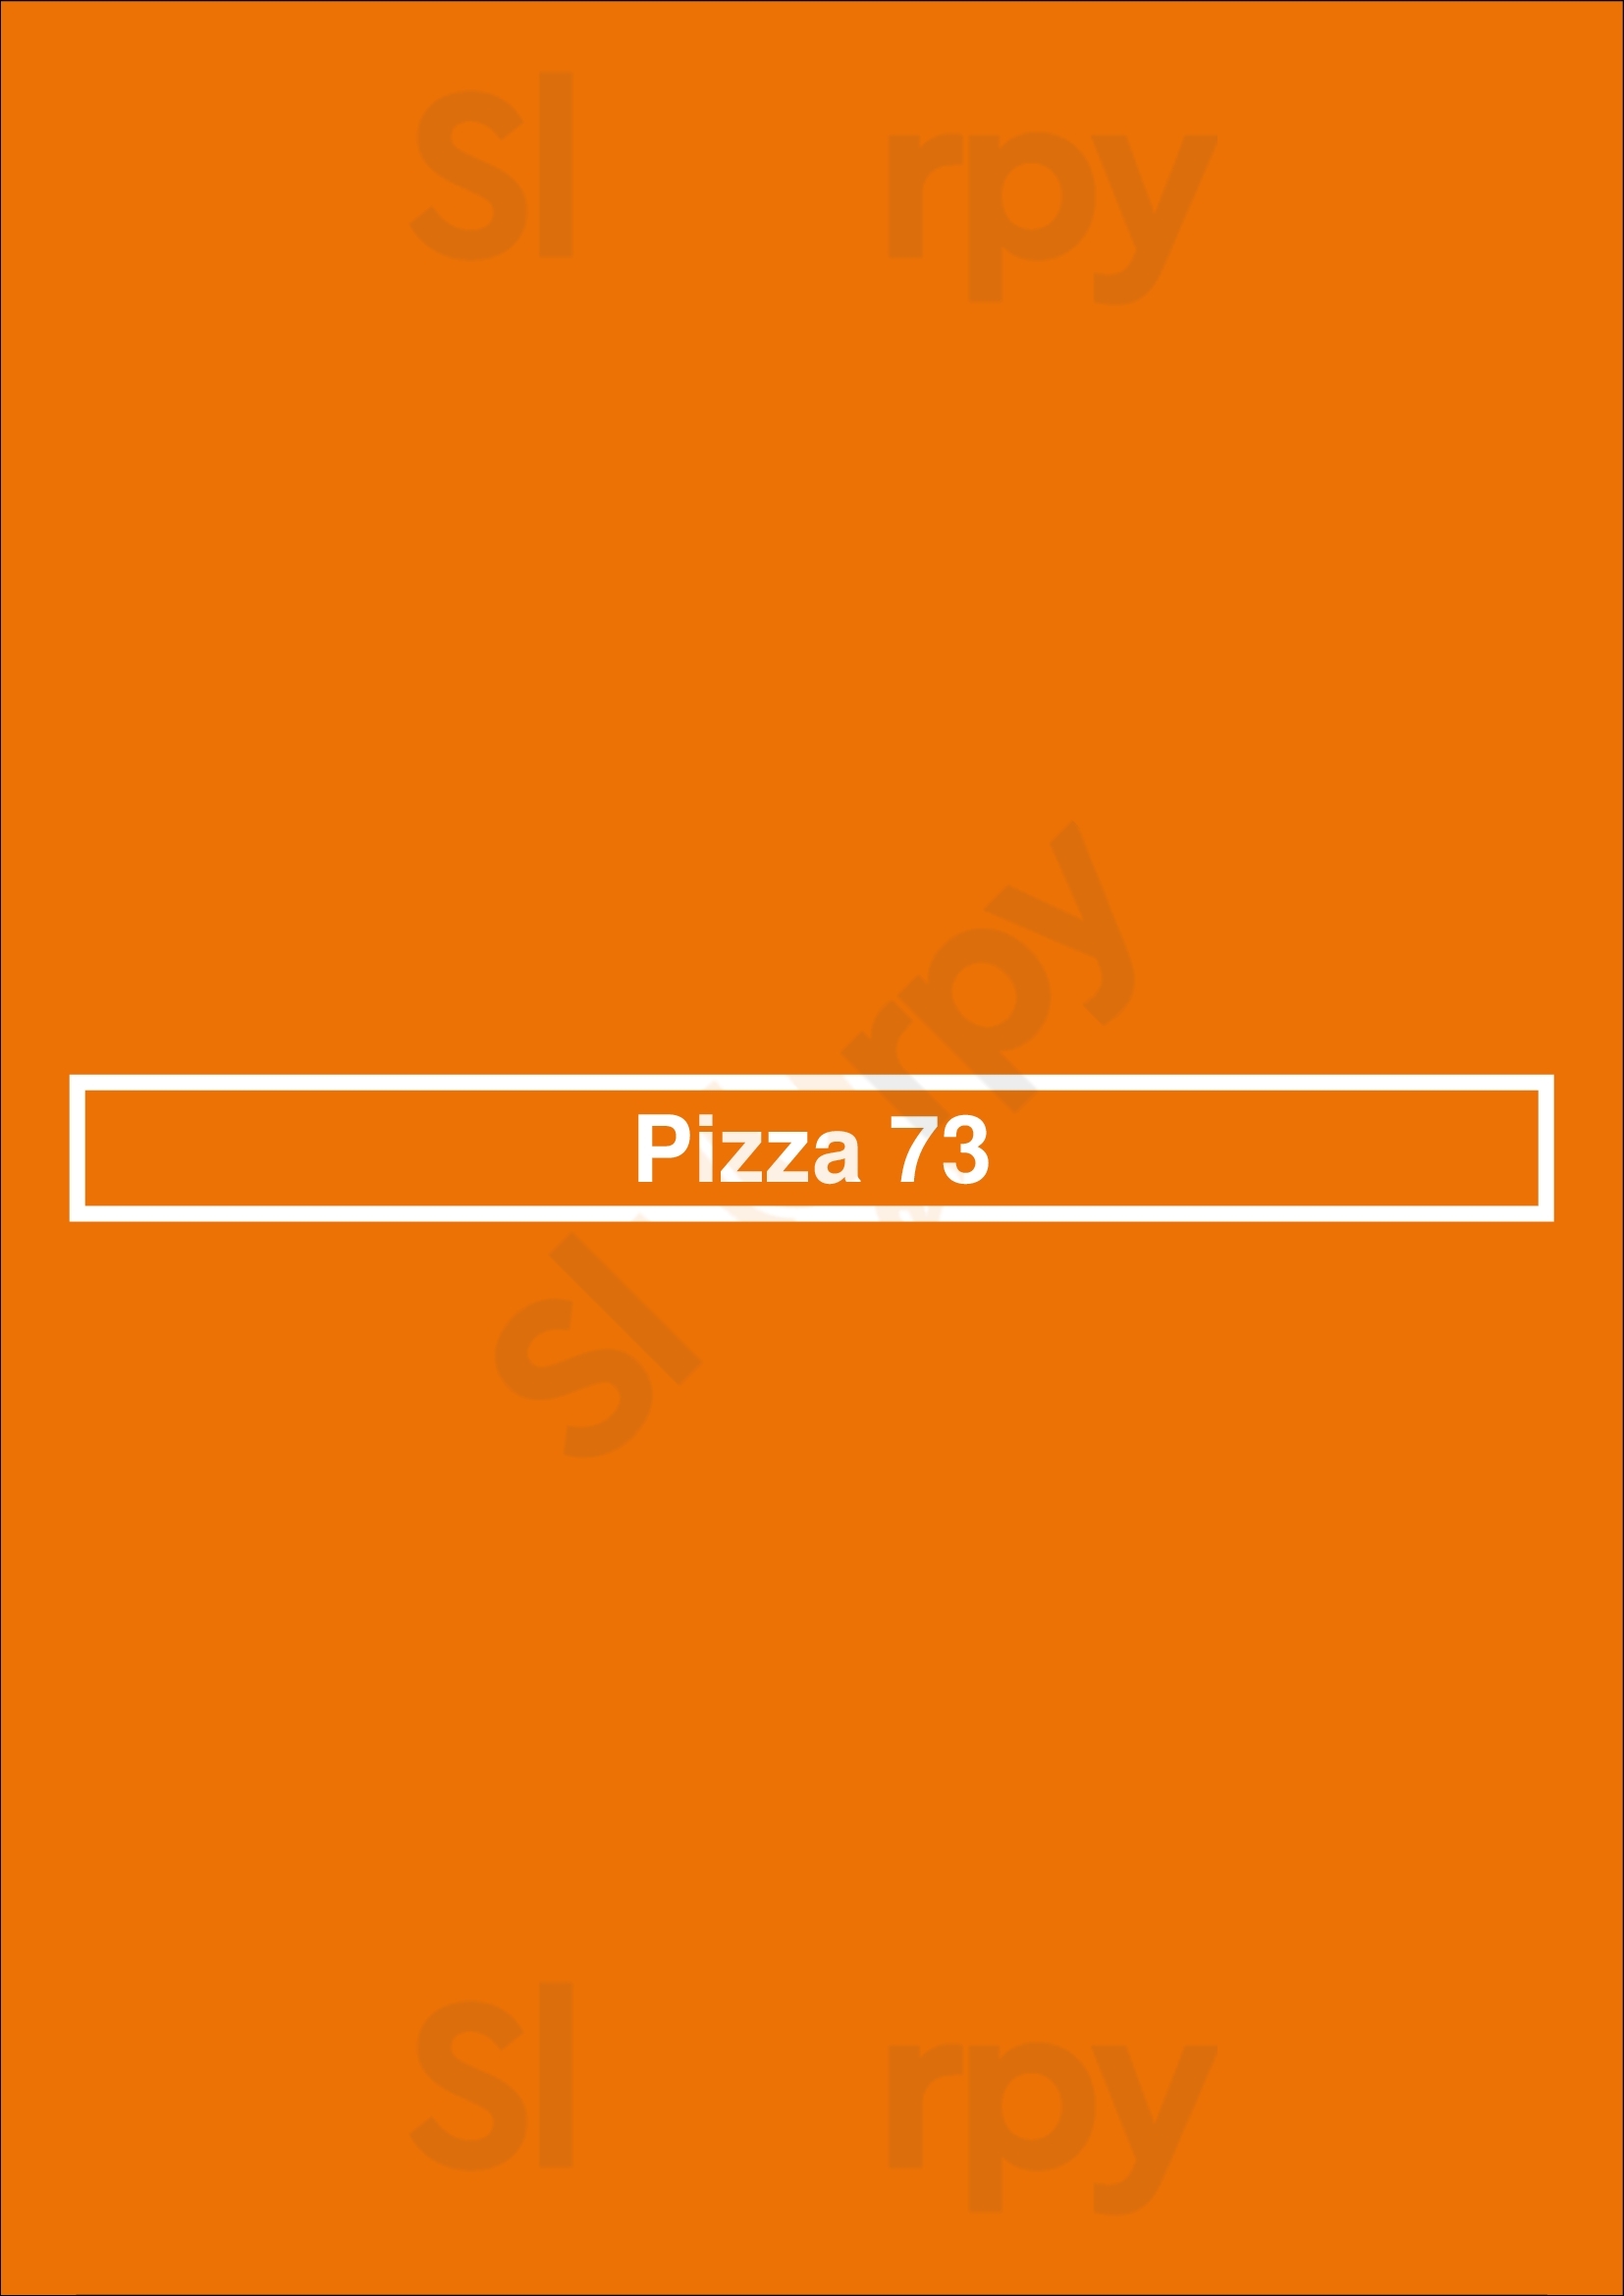 Pizza 73 Saskatoon Menu - 1